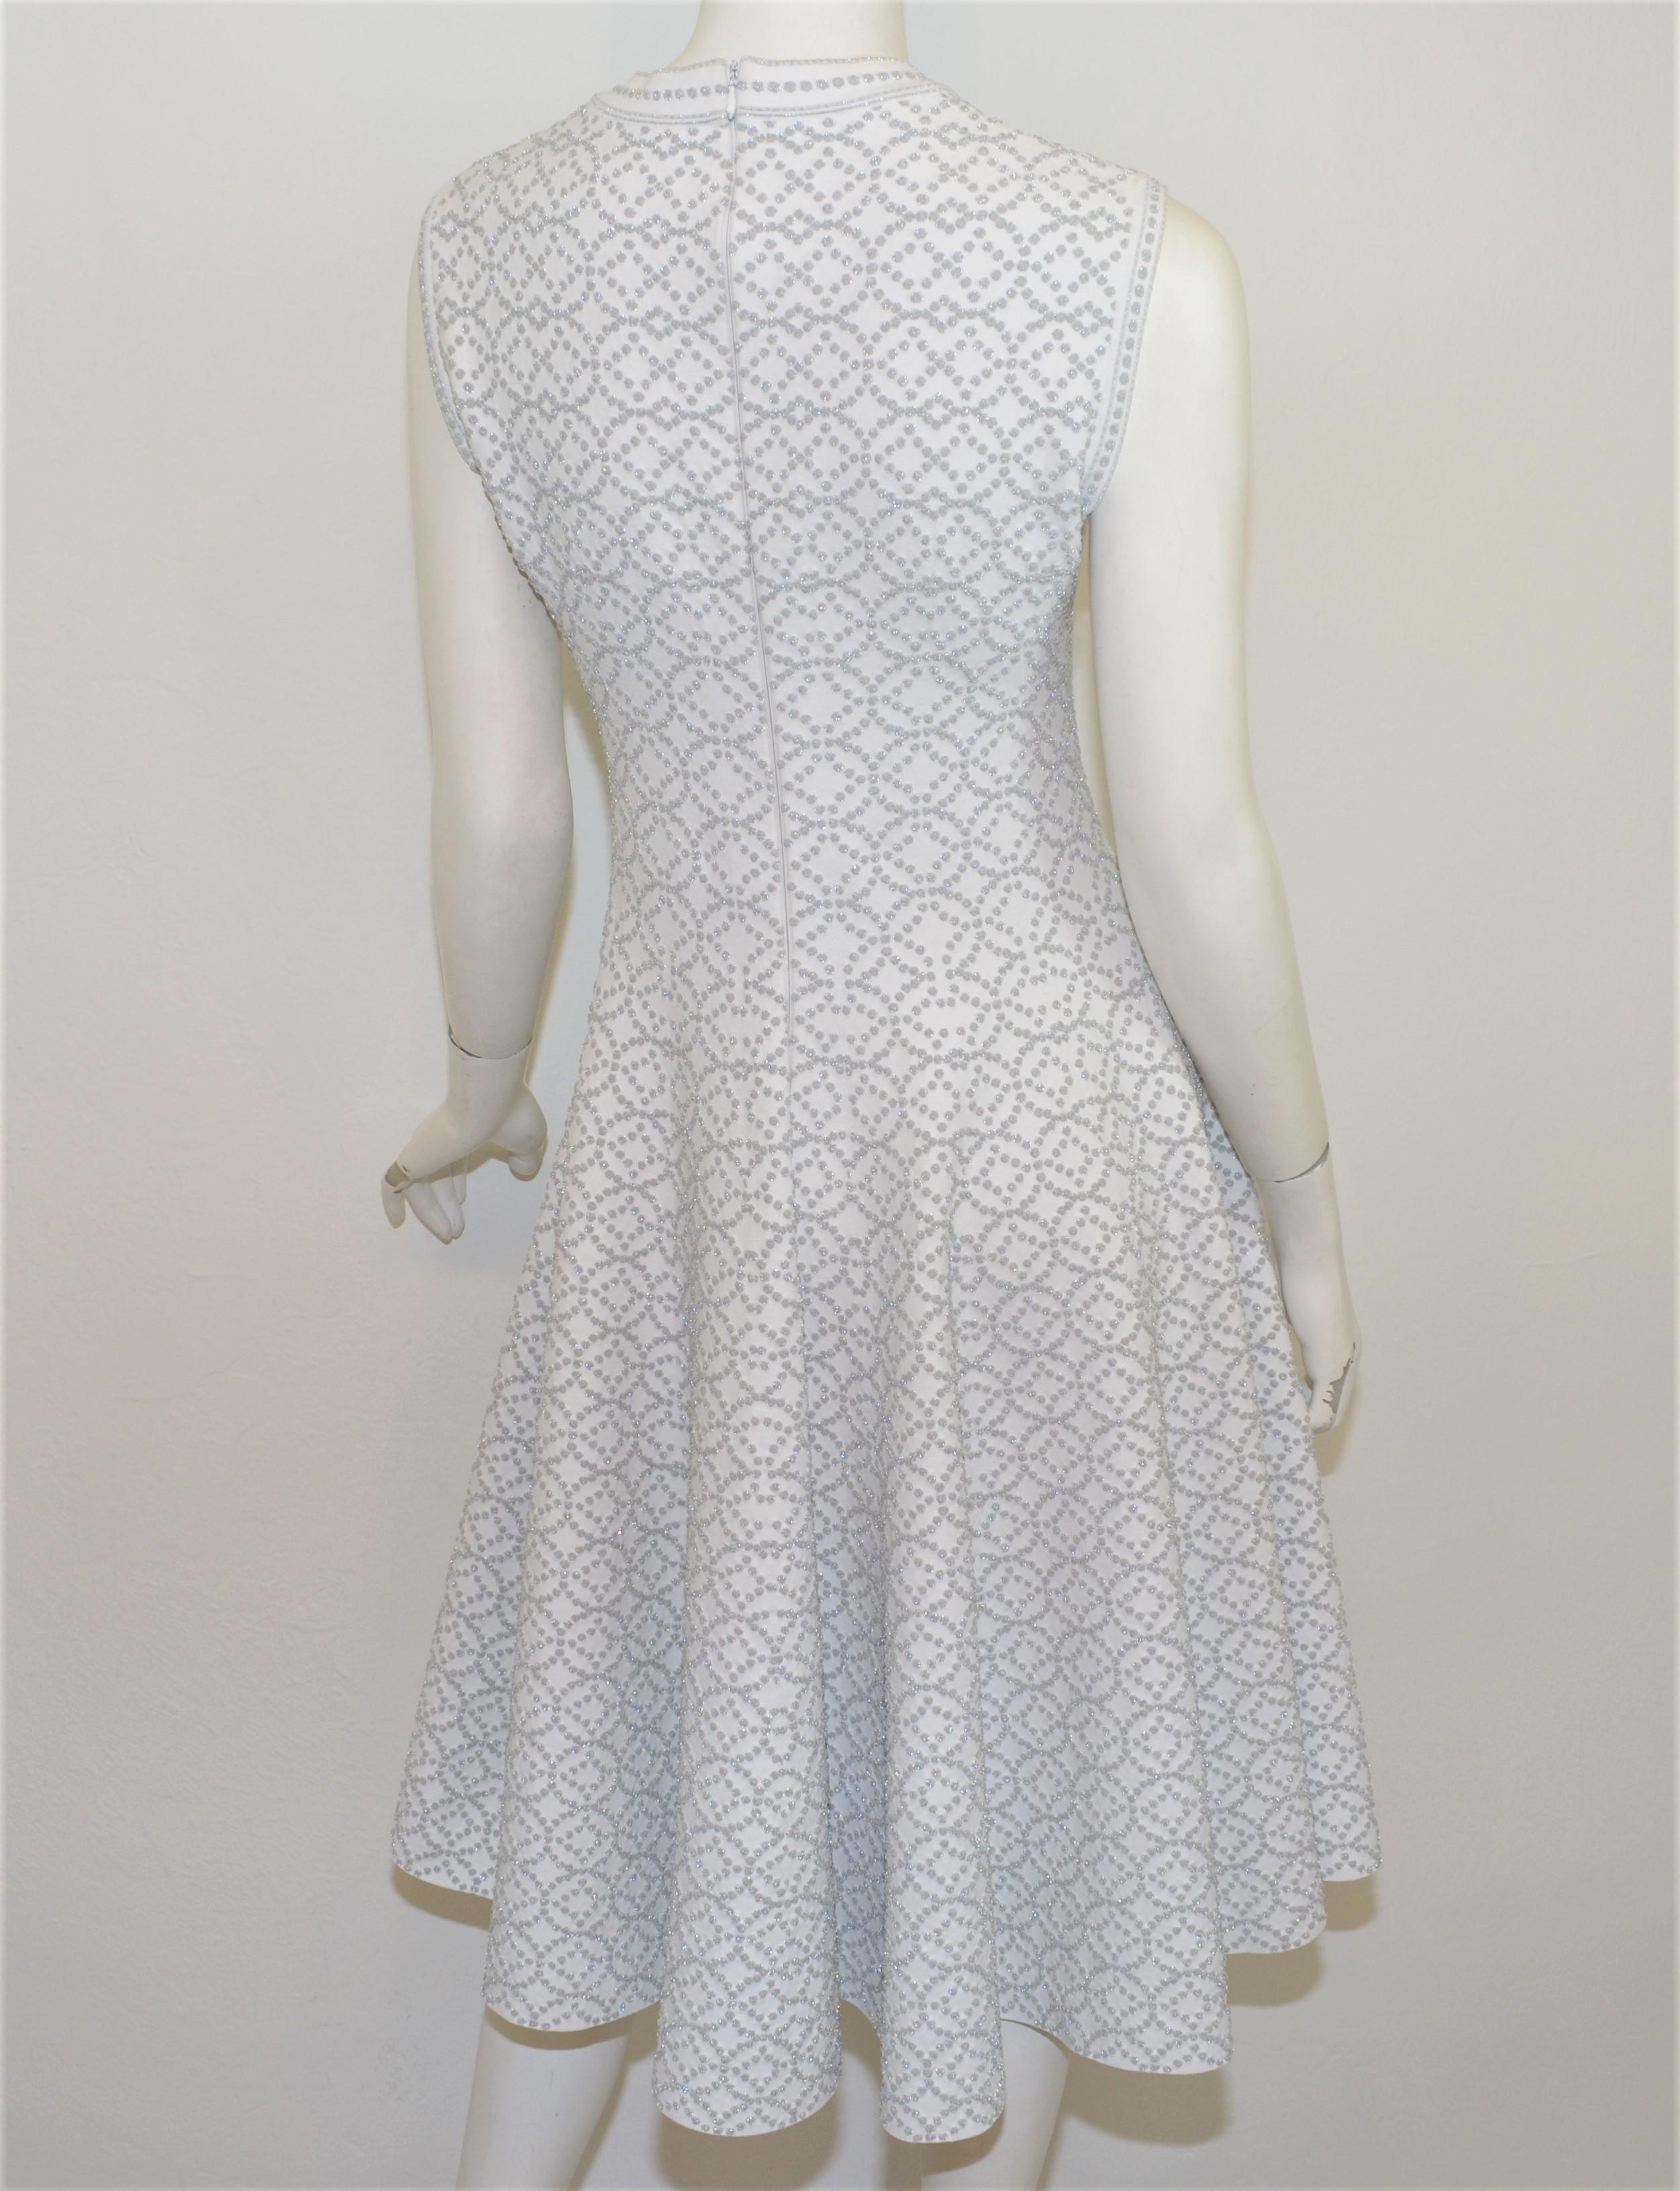 Alaia Passform und Streulicht Kleid in weiß mit metallischen Silber Fäden in der gesamten mit einer Passform und Streulicht Design vorgestellt. Das Kleid wird mit einem Reißverschluss am Rücken geschlossen und ist mit Größe 42 etikettiert.